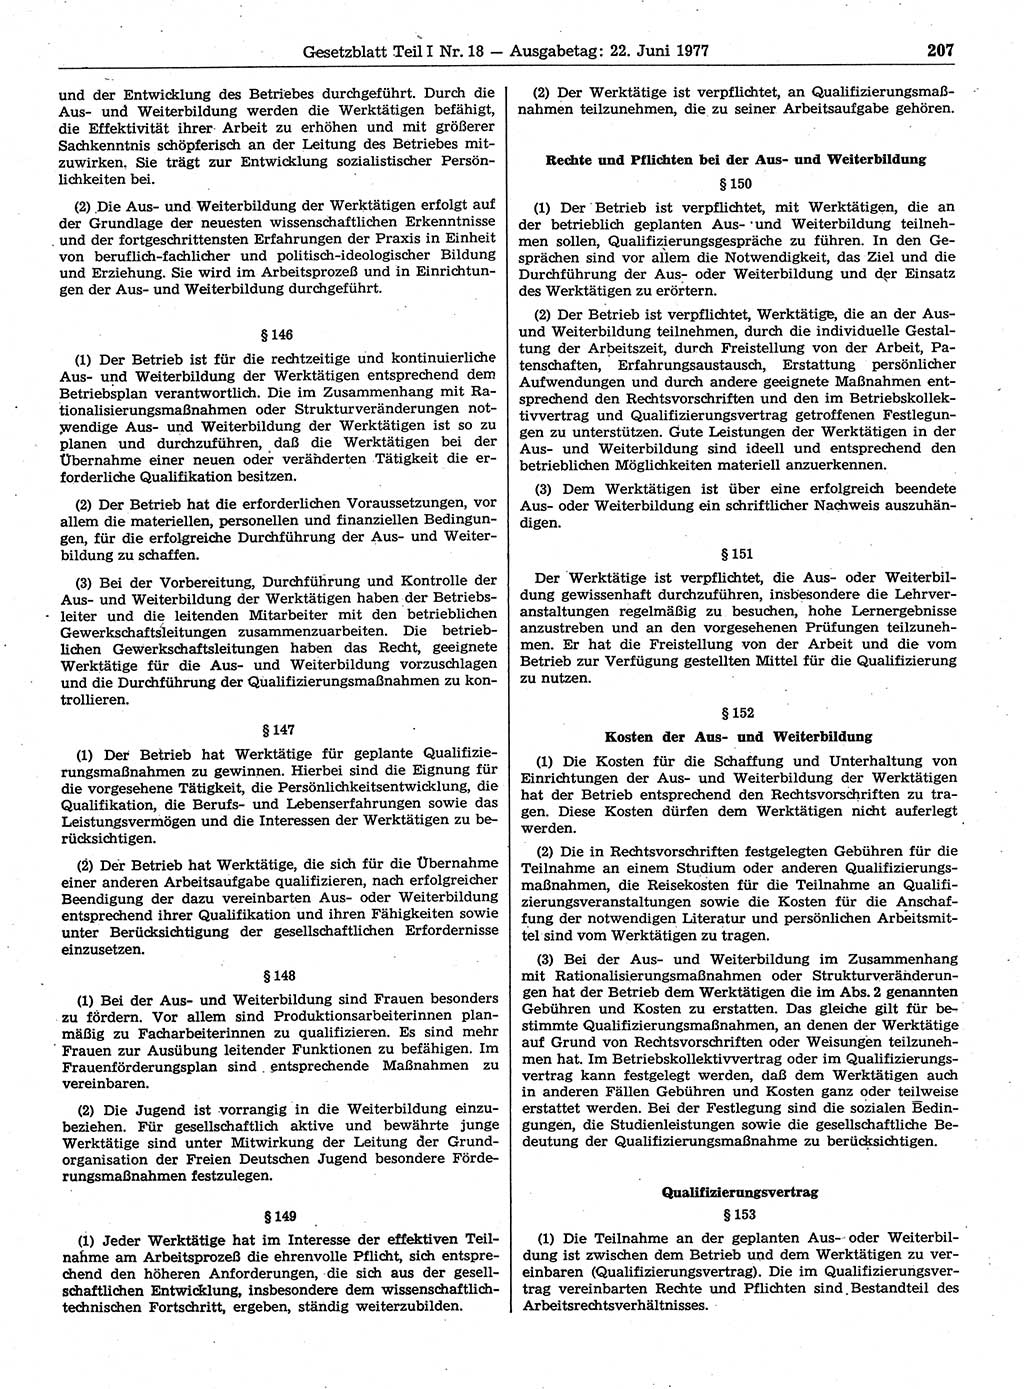 Gesetzblatt (GBl.) der Deutschen Demokratischen Republik (DDR) Teil Ⅰ 1977, Seite 207 (GBl. DDR Ⅰ 1977, S. 207)